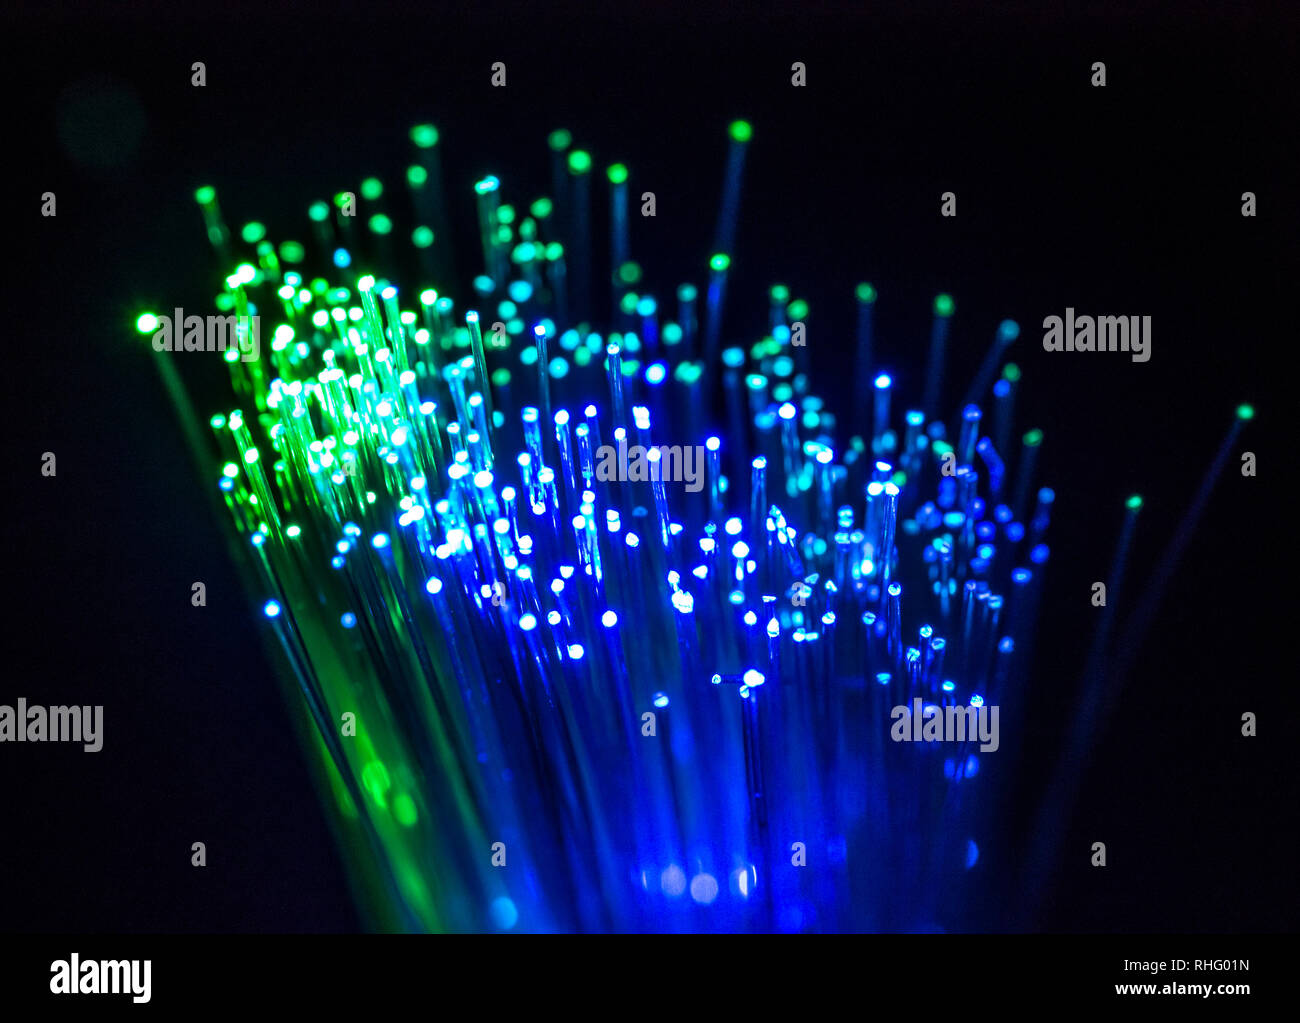 Bunte Glasfaser beleuchteten auf dunklem Hintergrund. High speed Internet  Konzept. Datenübertragung Optic Fiber Kabel. Bündel viele optische Fasern,  glo Stockfotografie - Alamy